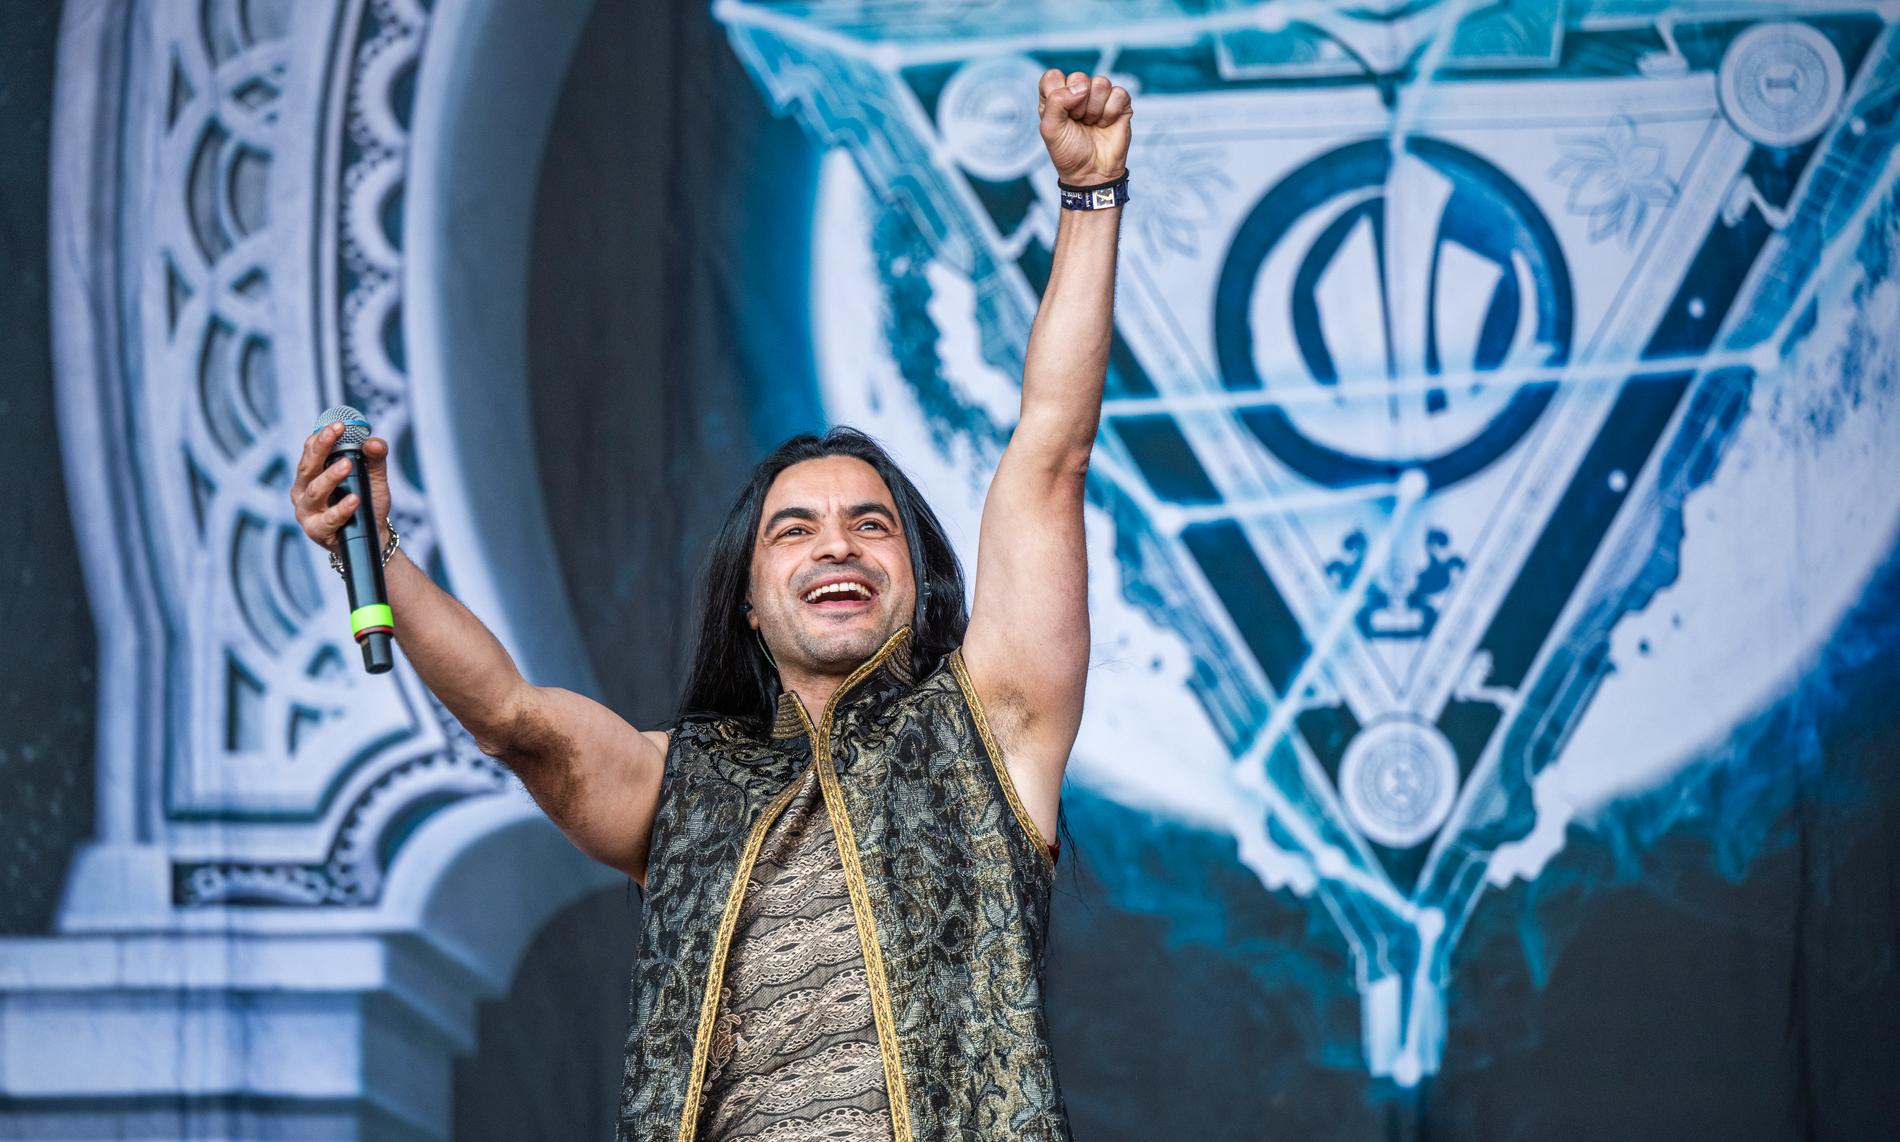 Zaher Zorgati sjunger i det skivaktuella tunisiska metalbandet Myrath. Förra sommaren gjorde bandet ett bejublat framträdande på Sweden Rock Festival.